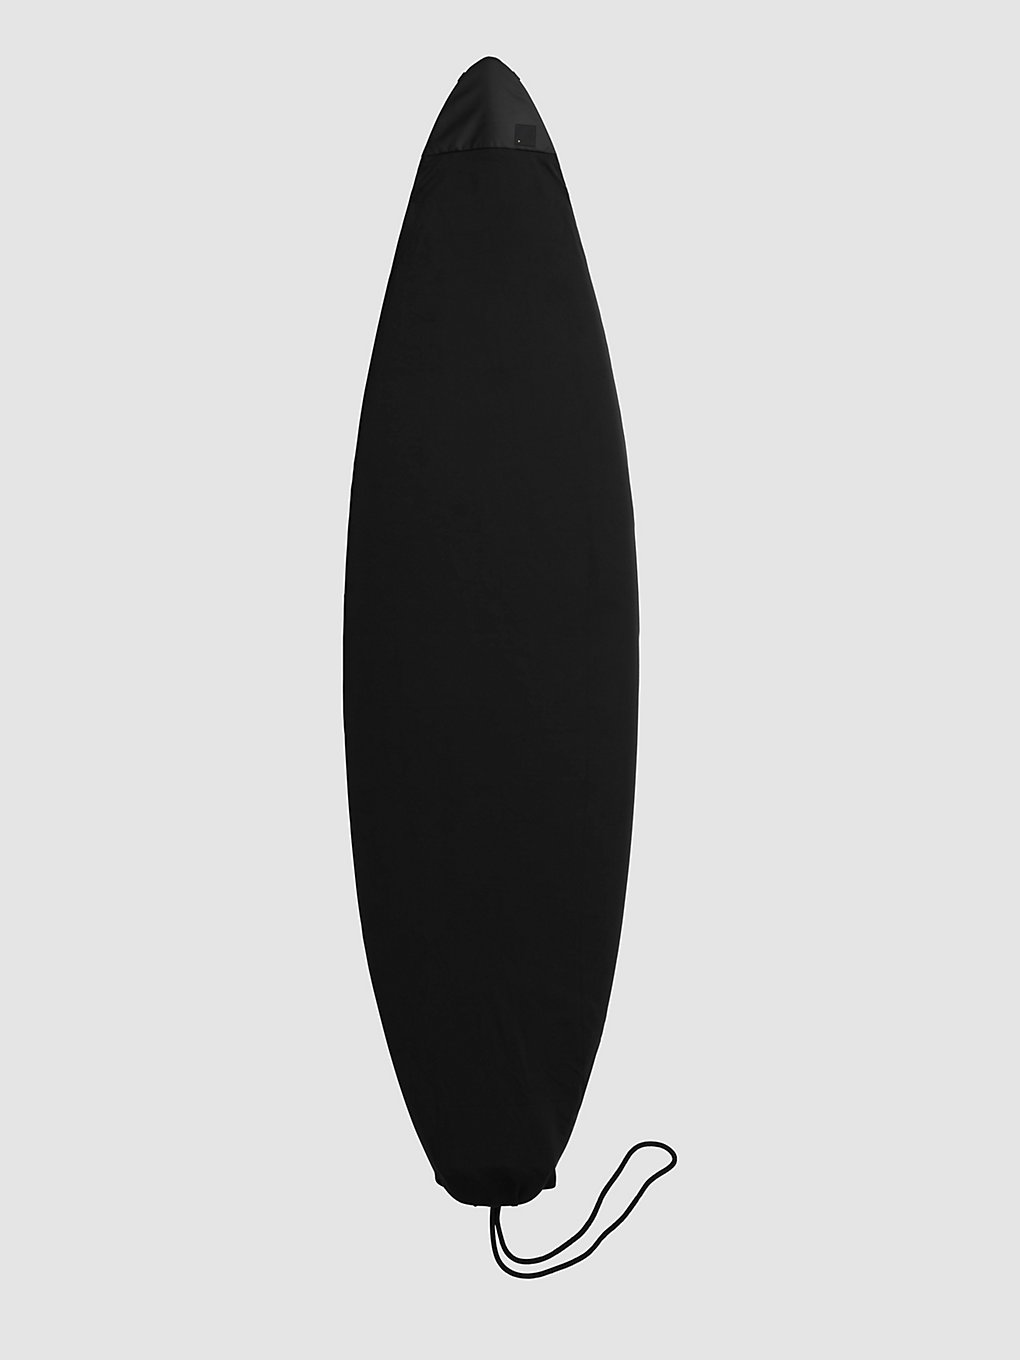 Db Surf Sock 6'0" Stab Ltd Surfboard-Tasche stab ltd kaufen